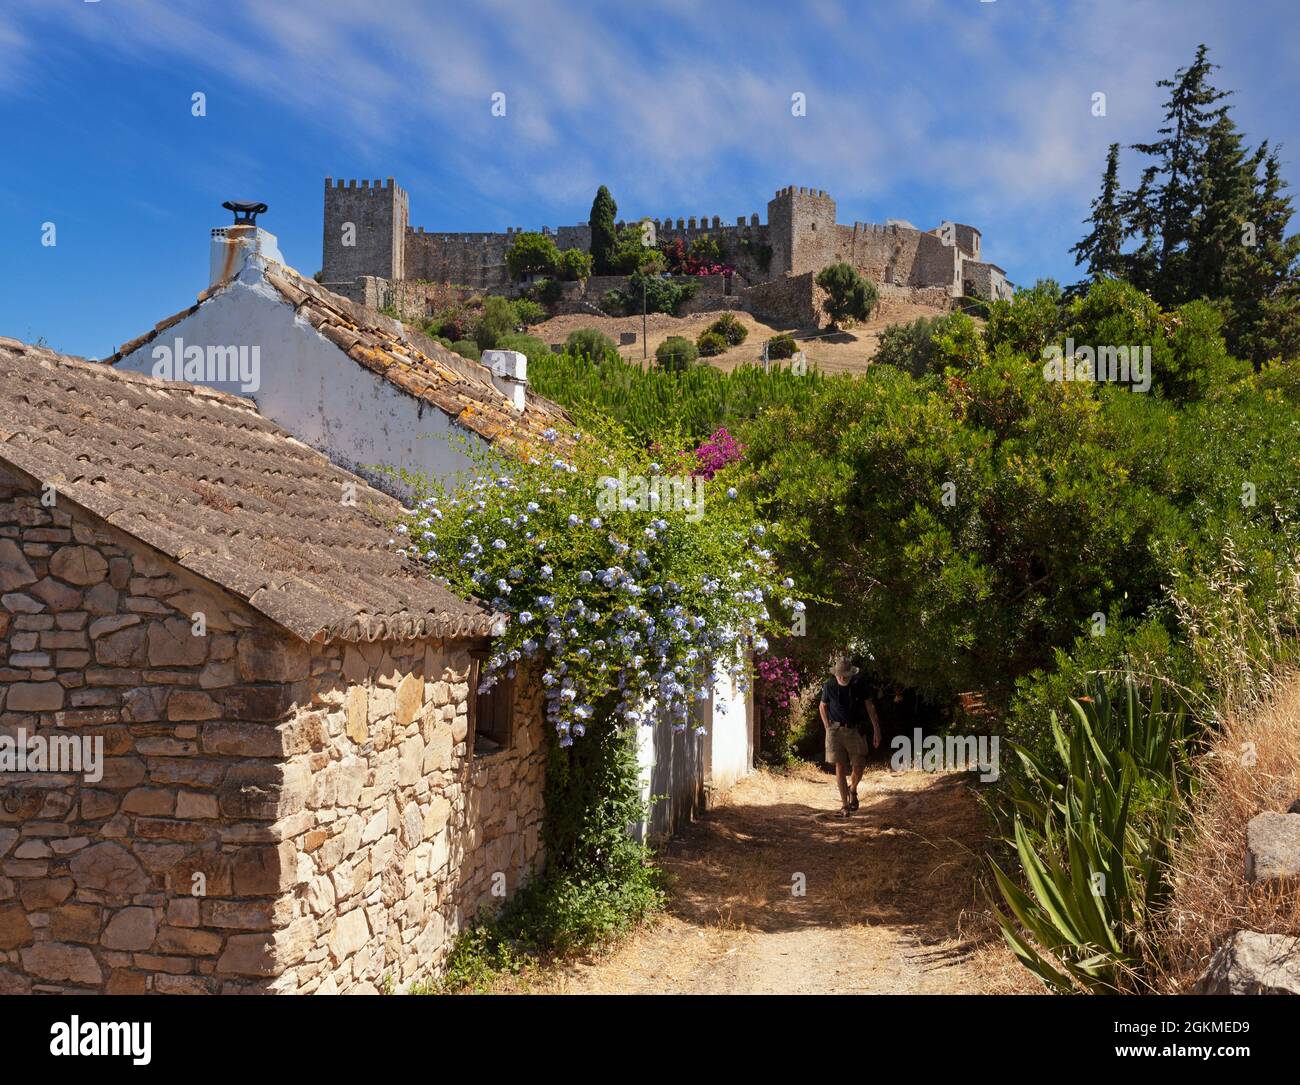 Le village fortifié de Castellar de la Frontera, dans la province de Cadix, en Andalousie, Espagne, est situé dans une forteresse mauresque-chrétienne préservée. Banque D'Images